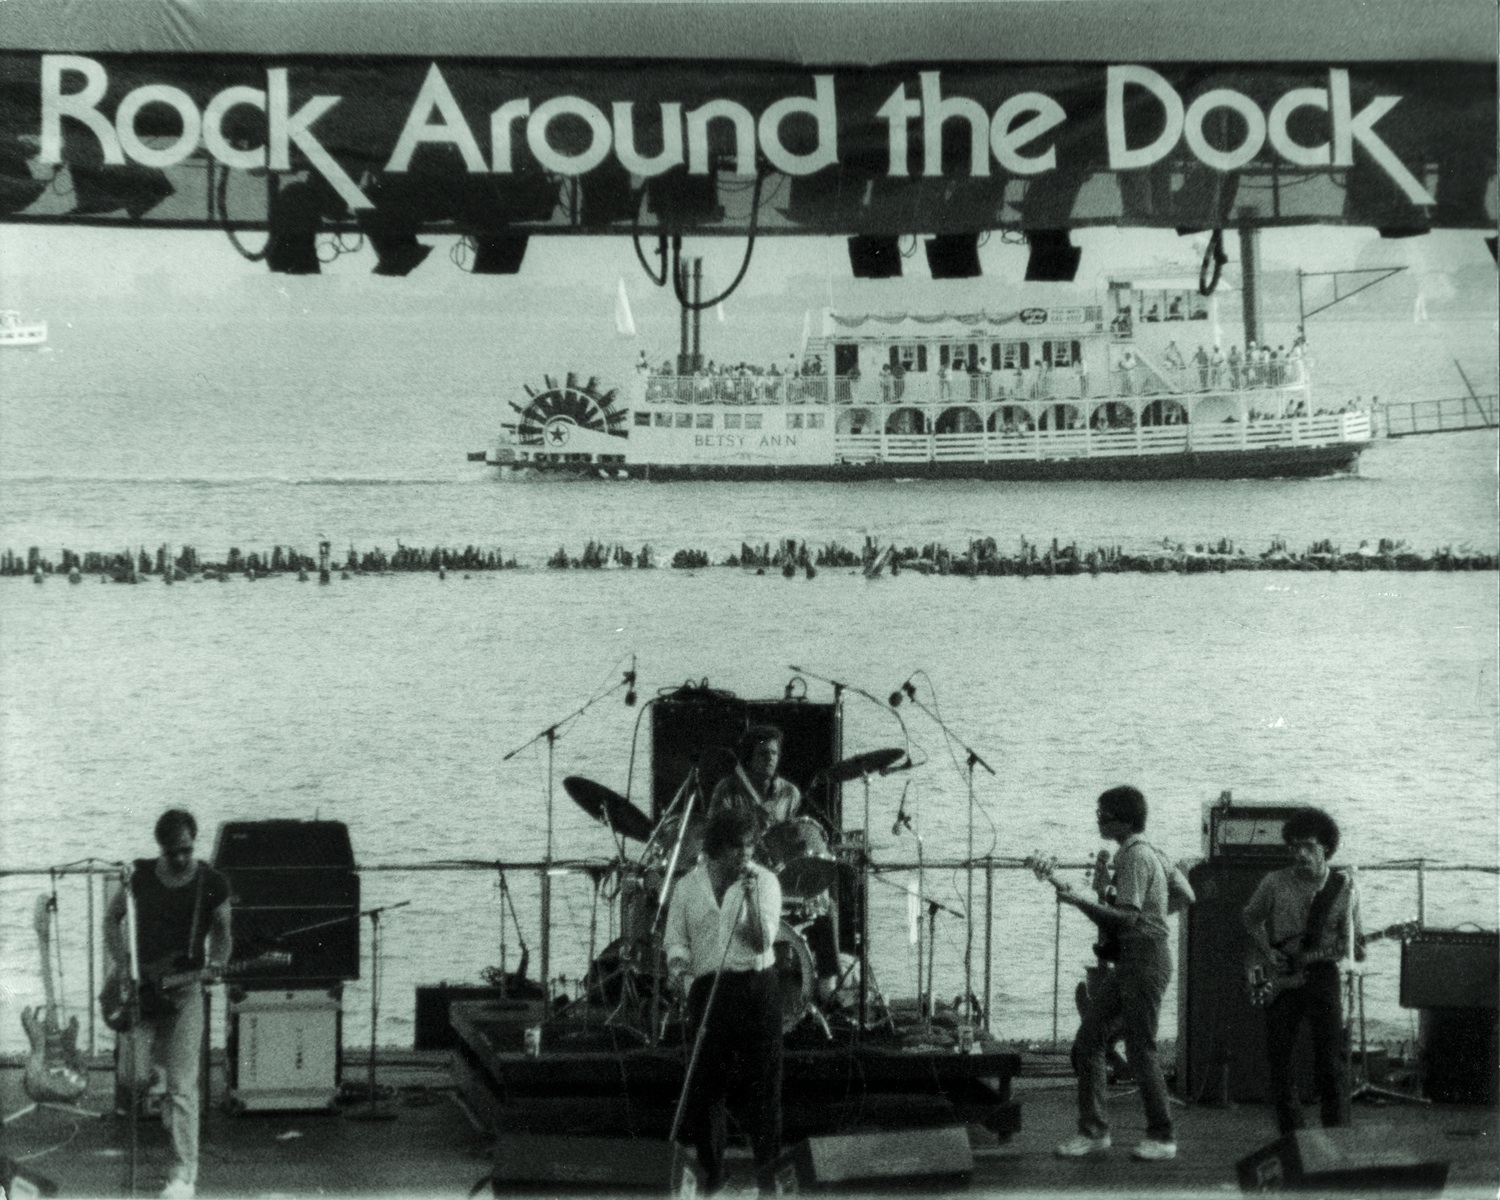 Desmond Navy Pier Chicago August 1981